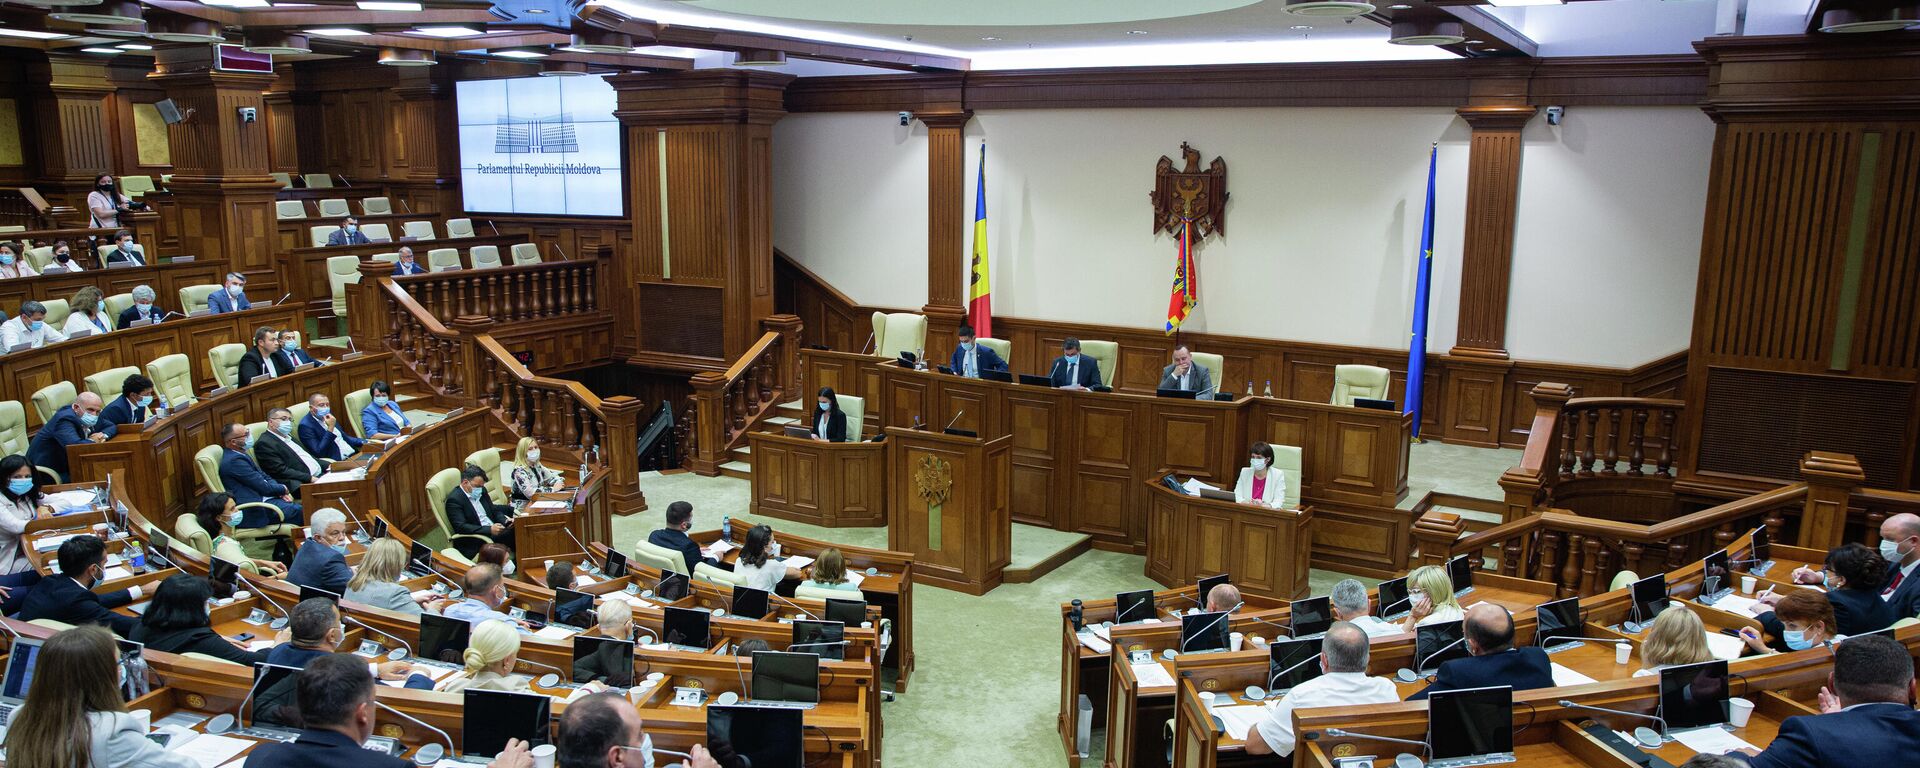 Deputați în Parlamentul Republicii Moldova  - Sputnik Moldova, 1920, 20.08.2021